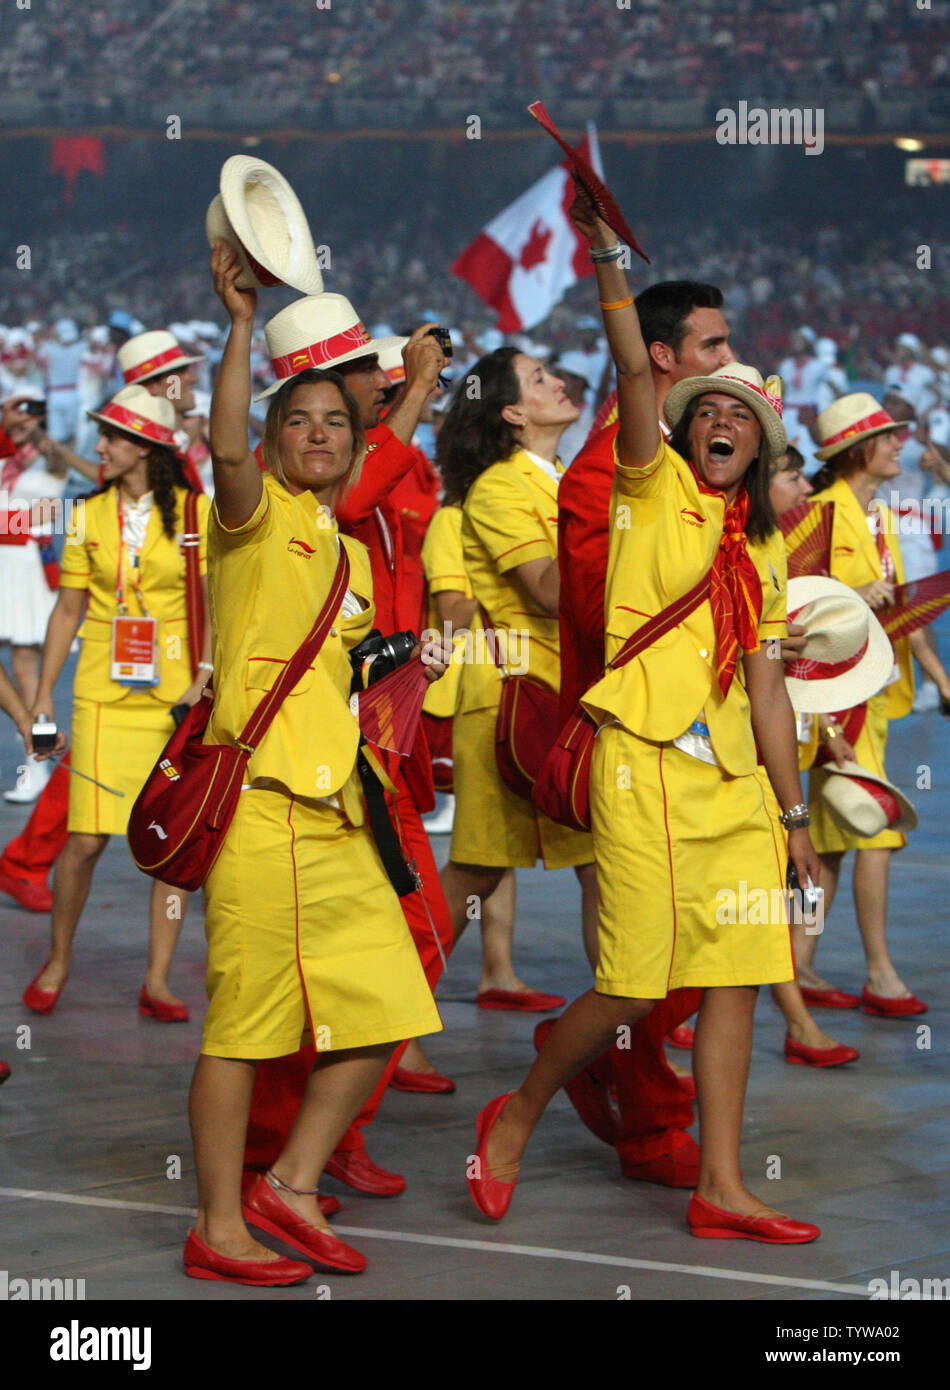 Der kanadische olympische Mannschaft marschiert in der National Stadium während der Eröffnungszeremonie für die Olympischen Sommerspiele 2008 in Peking, China, am 8. August 2008. (UPI Foto/Terry Schmitt) Stockfoto